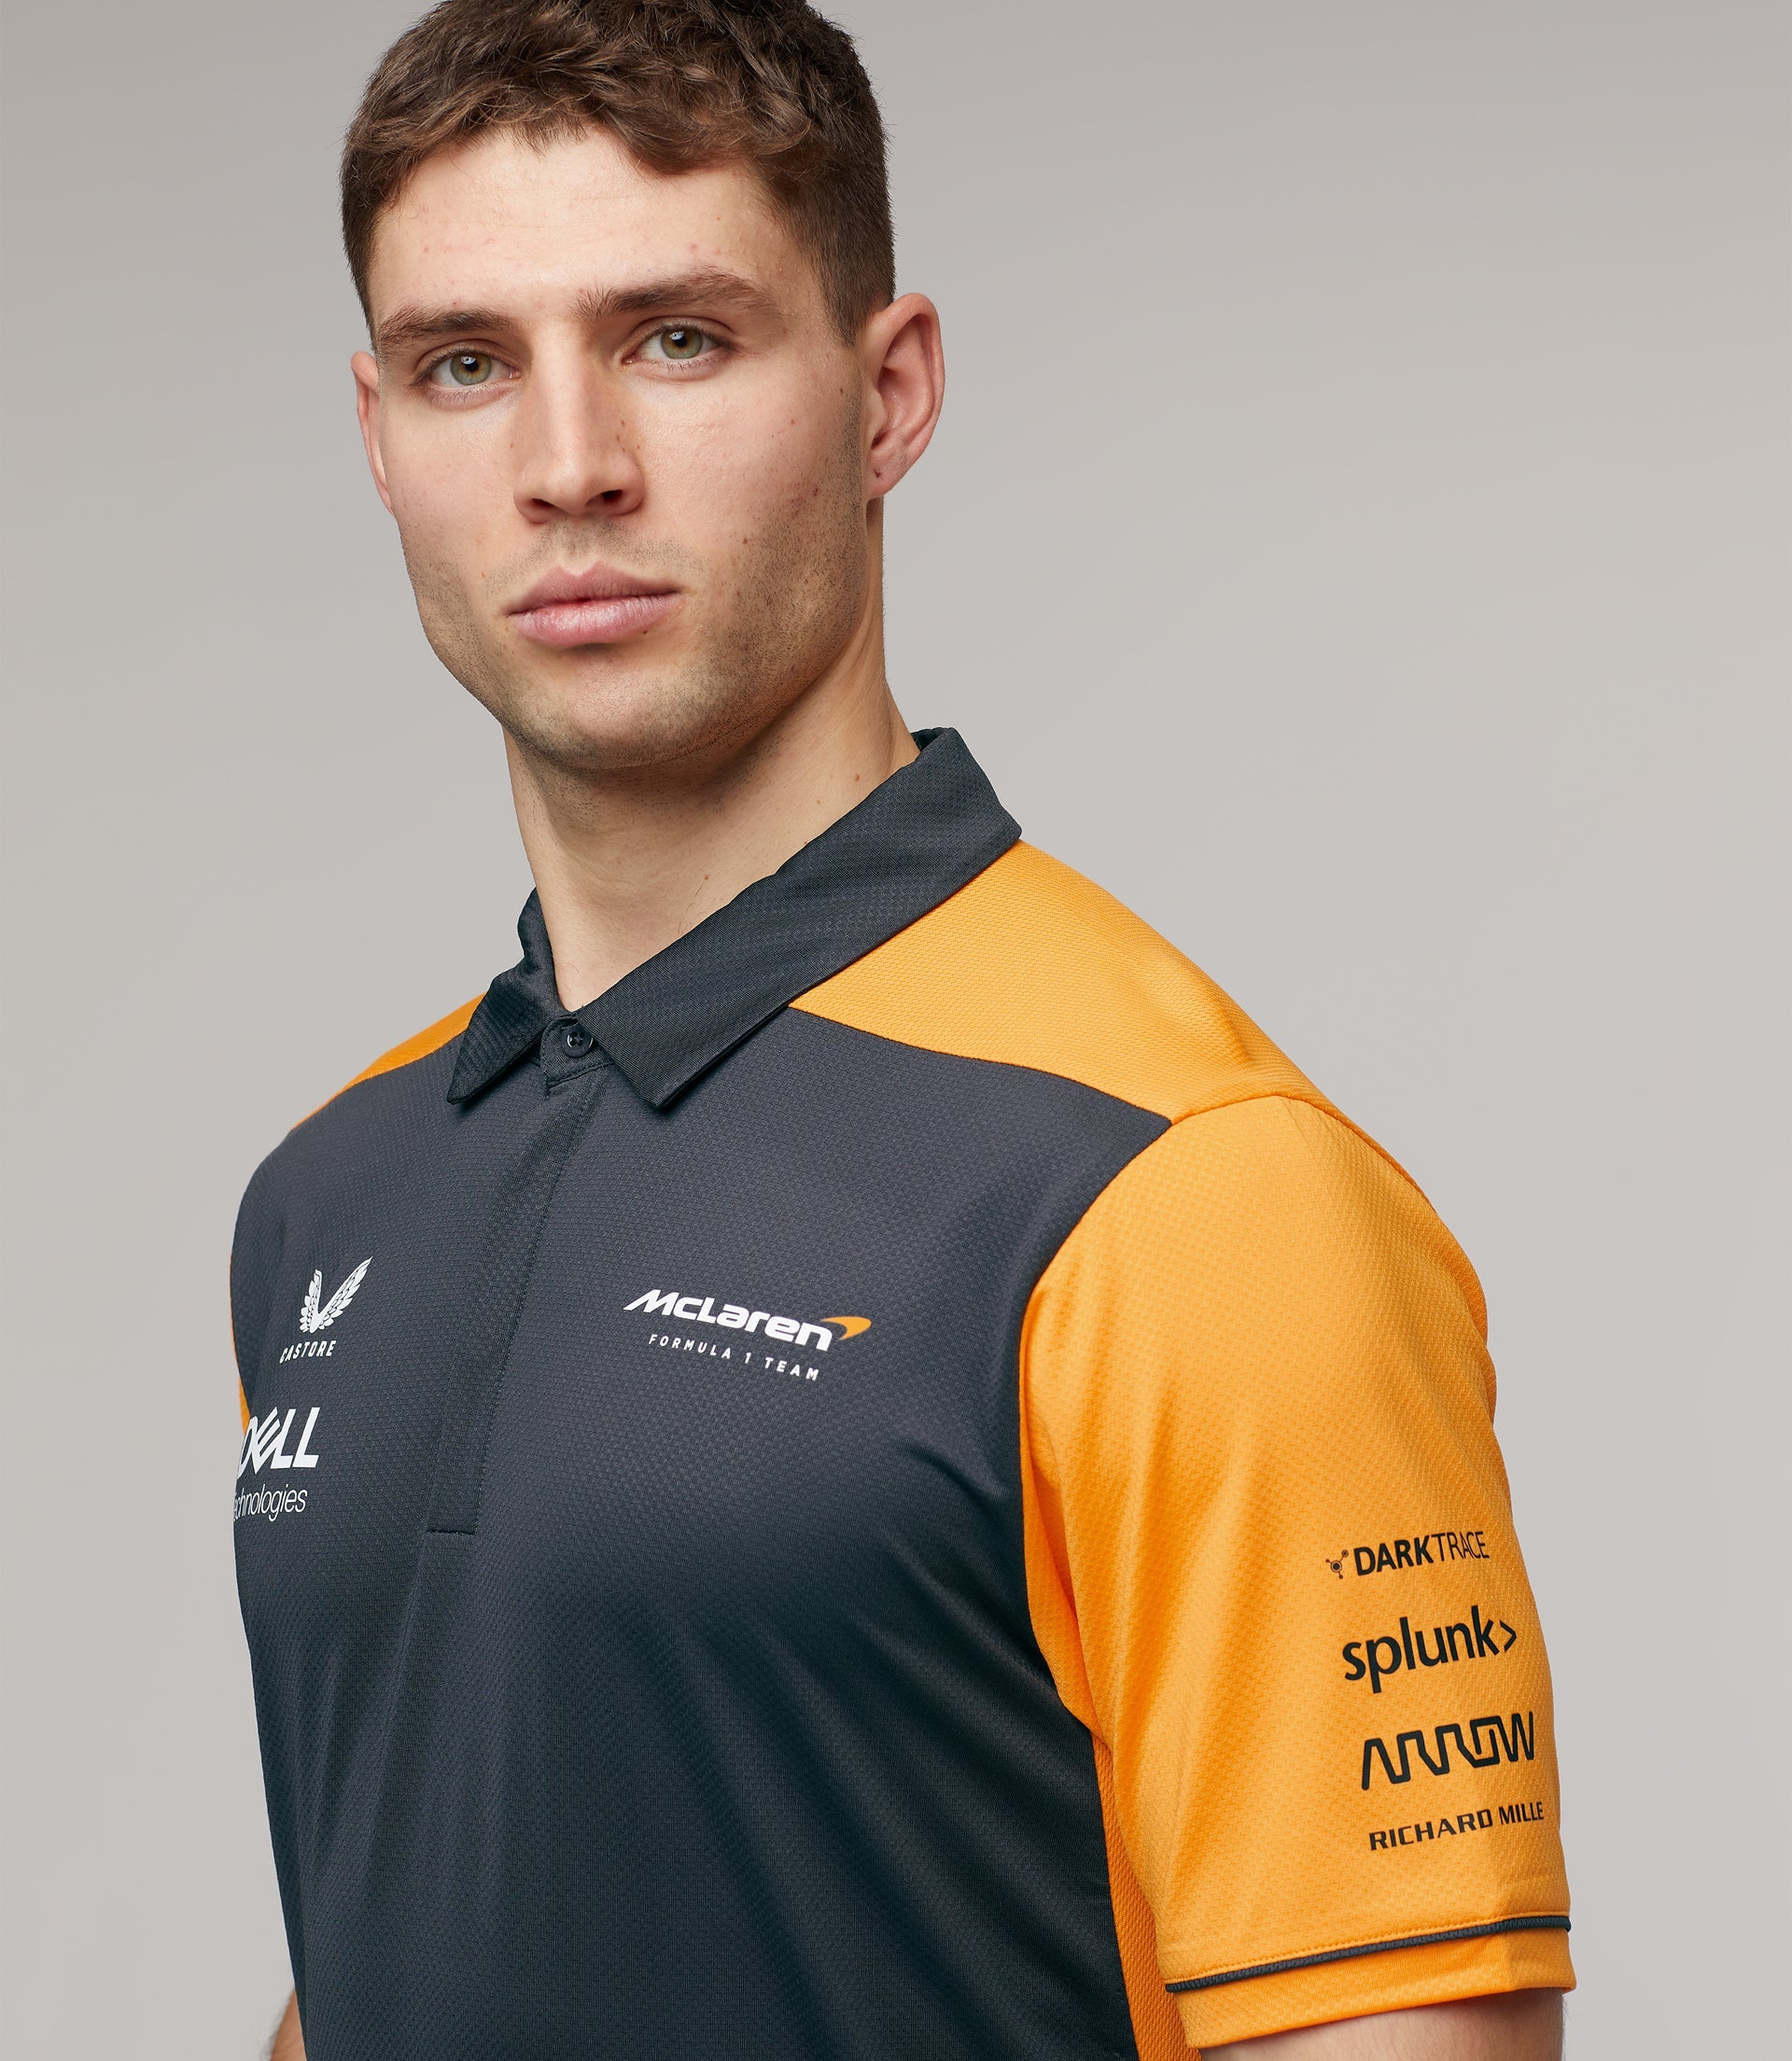 Mclaren F1 Men's Team Polo Shirt Dark Grey